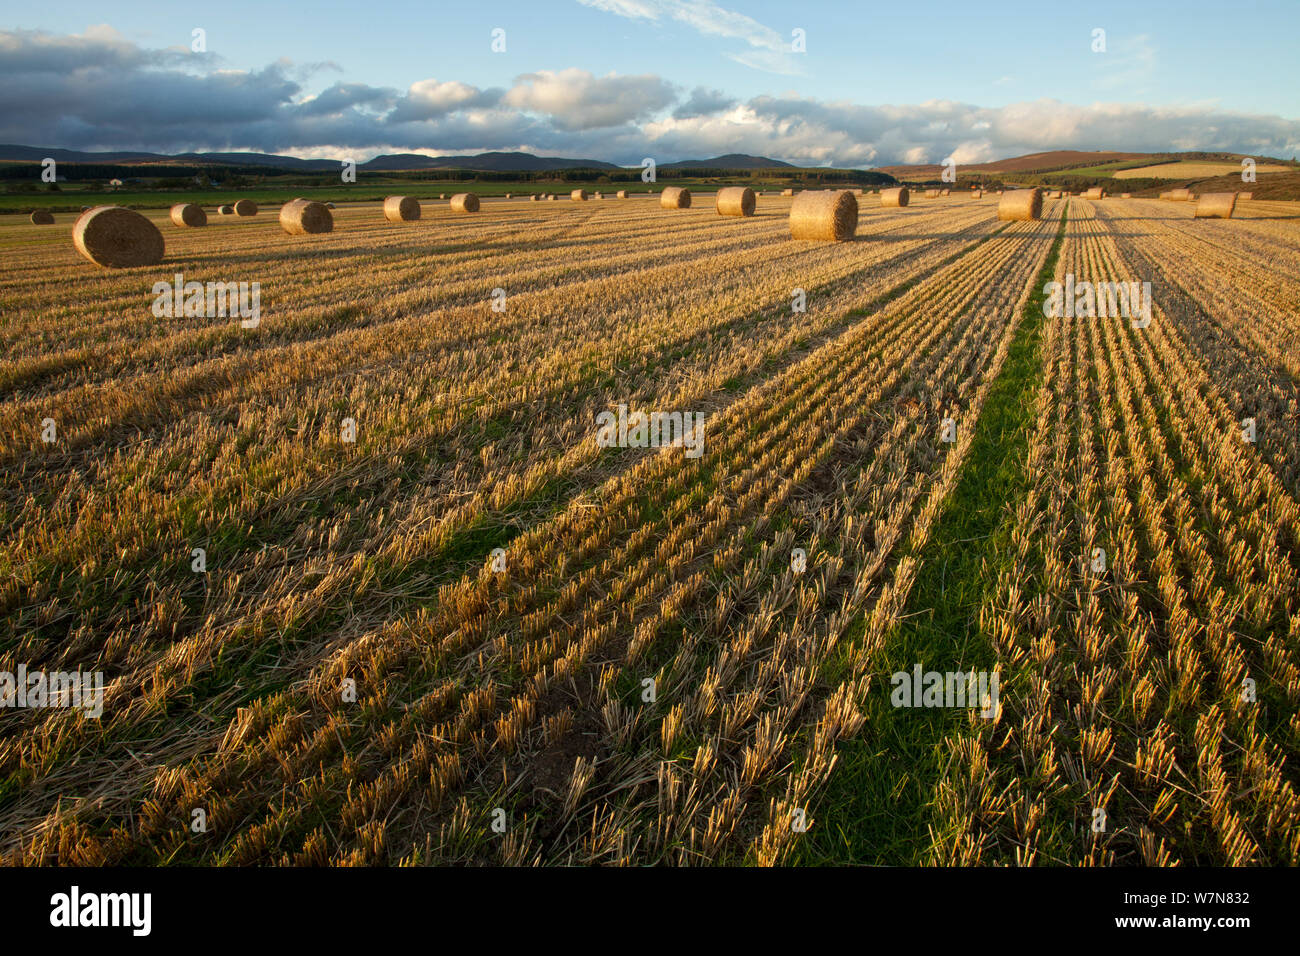 Bottes de paille d'orge dans le champ après la récolte, Inverness-shire, Scotland, UK, octobre Banque D'Images